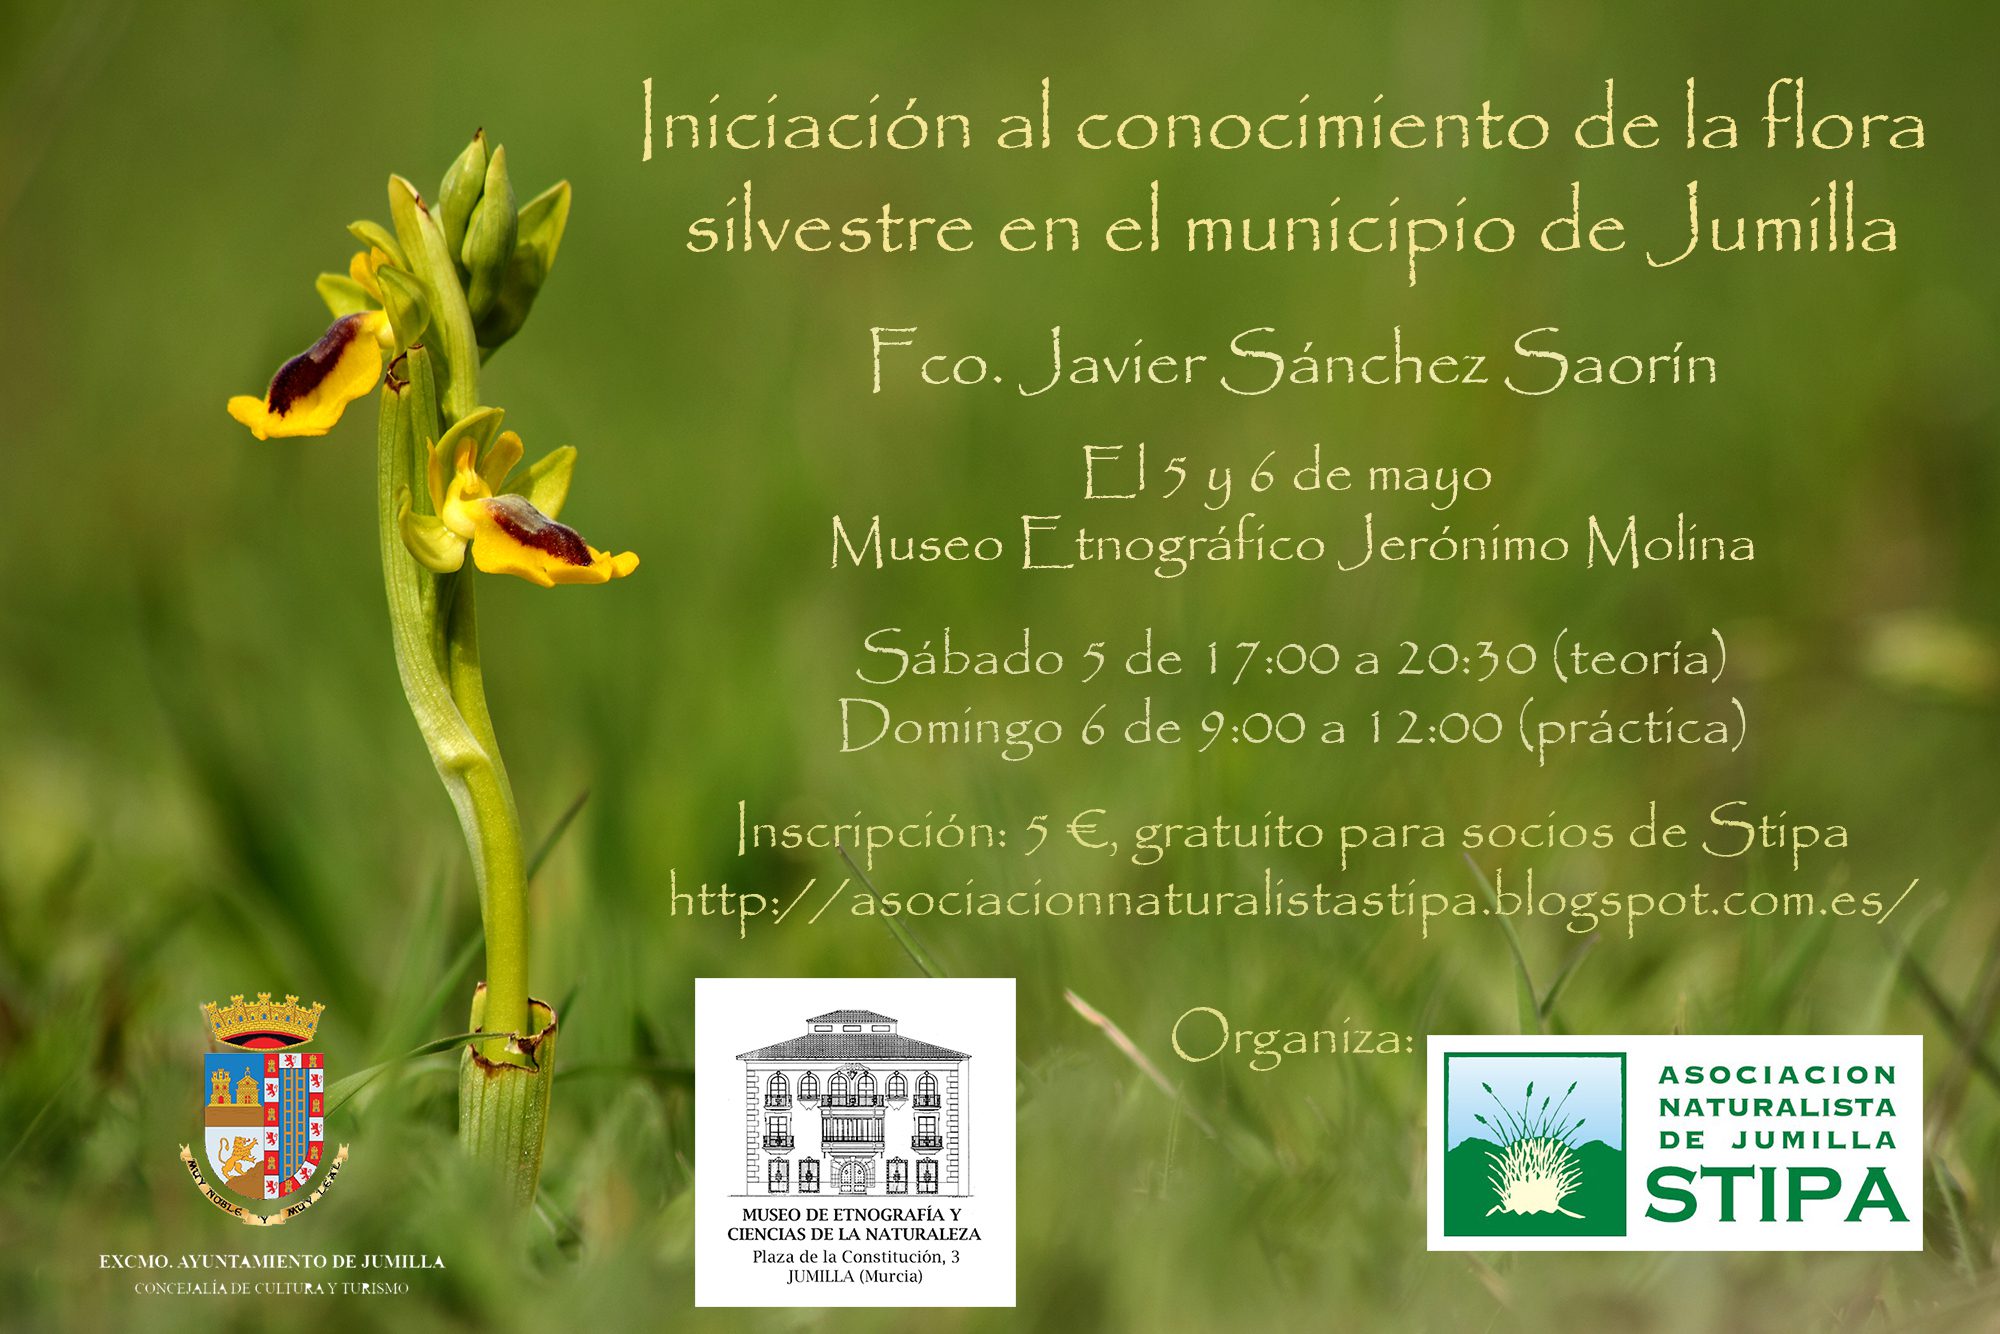 Stipa invita a conocer la flora silvestre del municipio de Jumilla